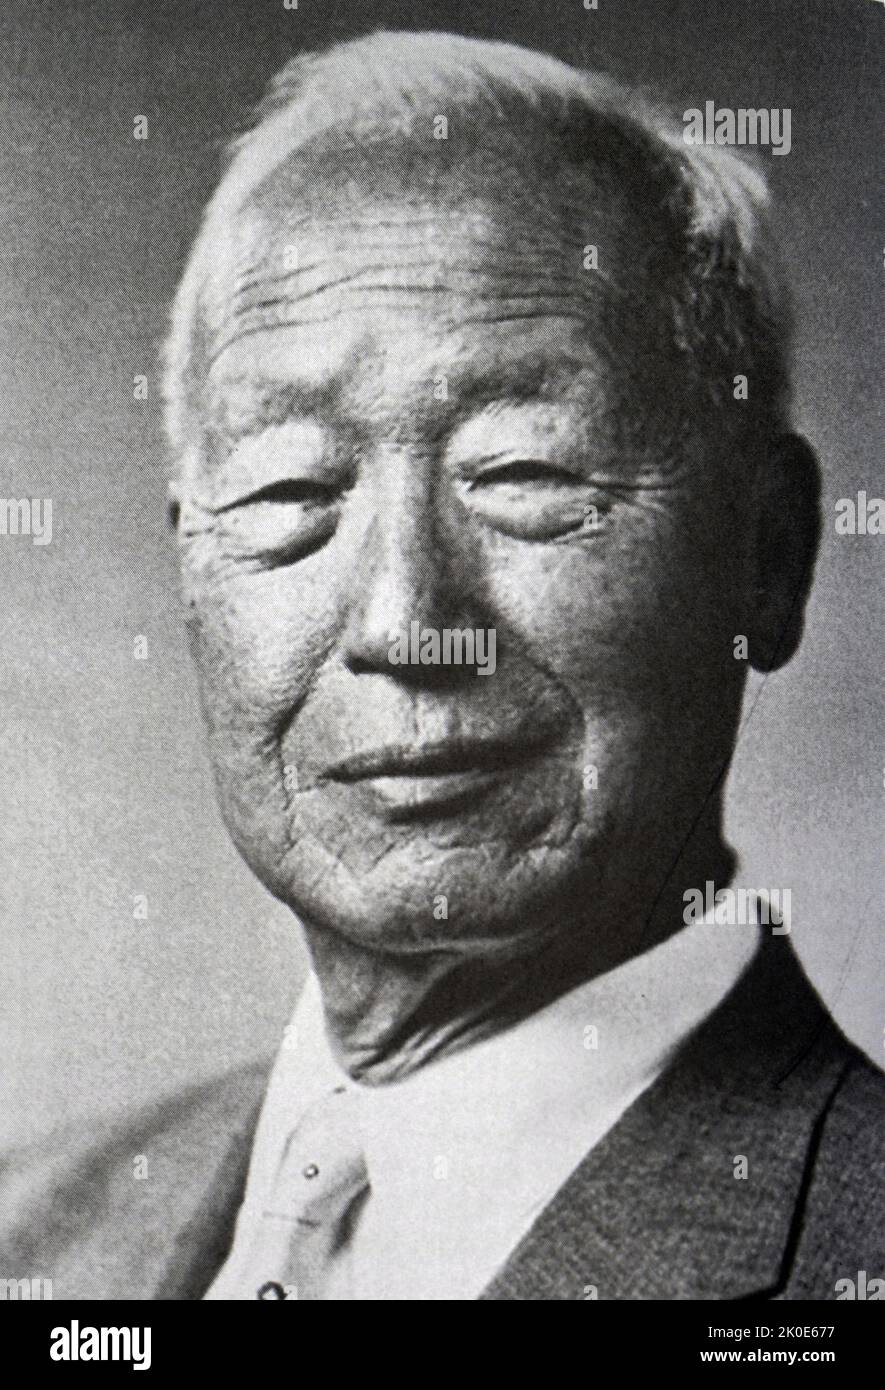 Syngman Rhee (1875 - 1965) südkoreanischer Politiker, der von 1948 bis 1960 als erster Präsident Südkoreas fungierte. Rhee war auch der erste und letzte Präsident der Provisorischen Regierung der Republik Korea von 1919 bis zu seiner Amtsenthebung im Jahr 1925 und von 1947 bis 1948. Stockfoto